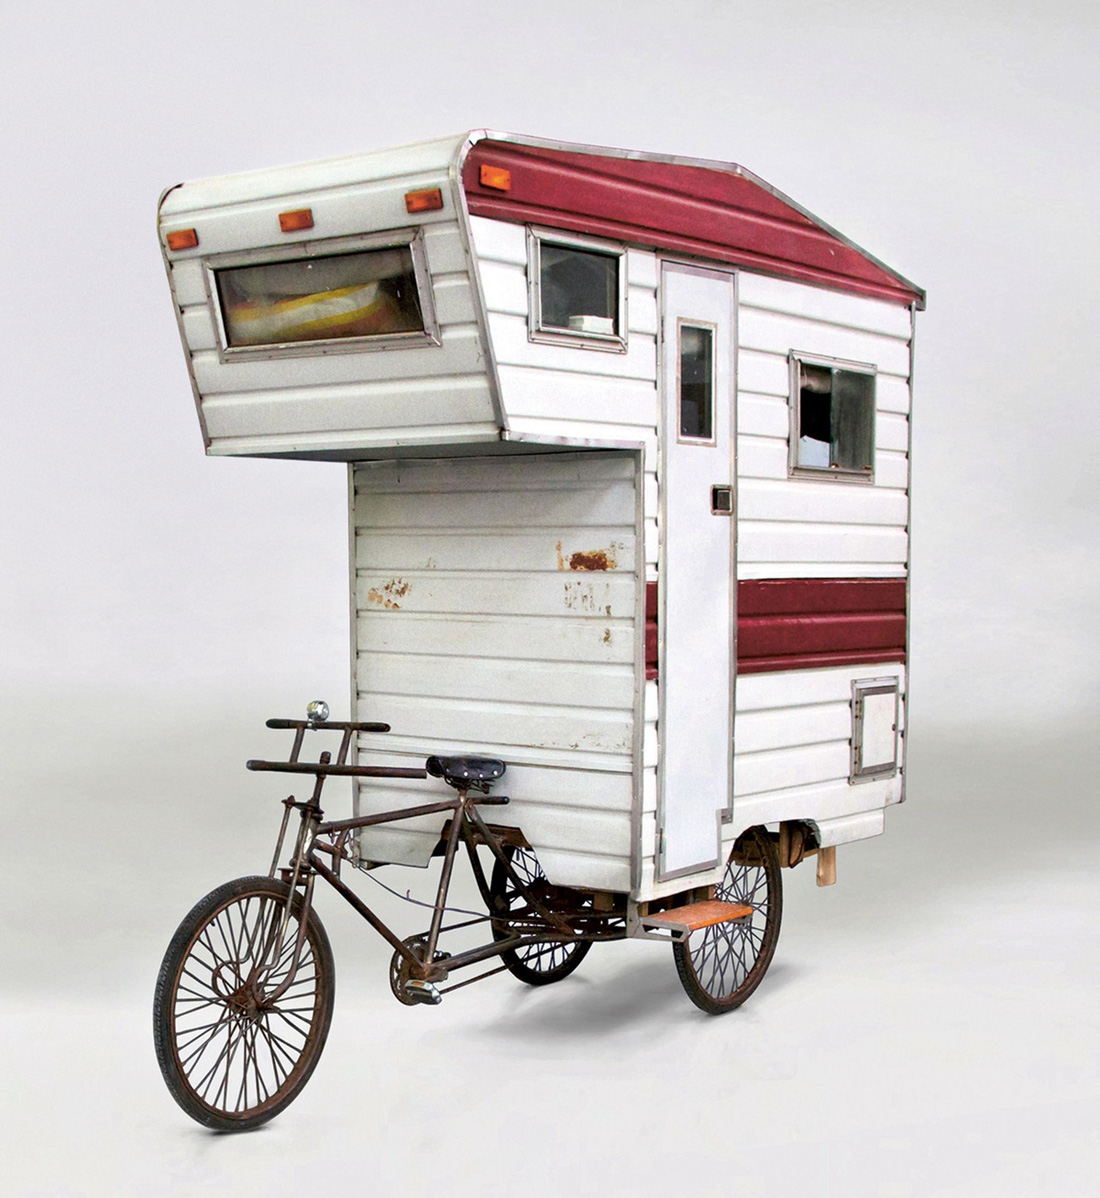 Thực tế, trước Camper Kart, Kevin Cyr cũng từng nổi tiếng với việc chế ra nhà di động xe đạp - một không gian nhỏ gọn nhưng đầy đủ chức năng cơ bản - Ảnh: The Sun